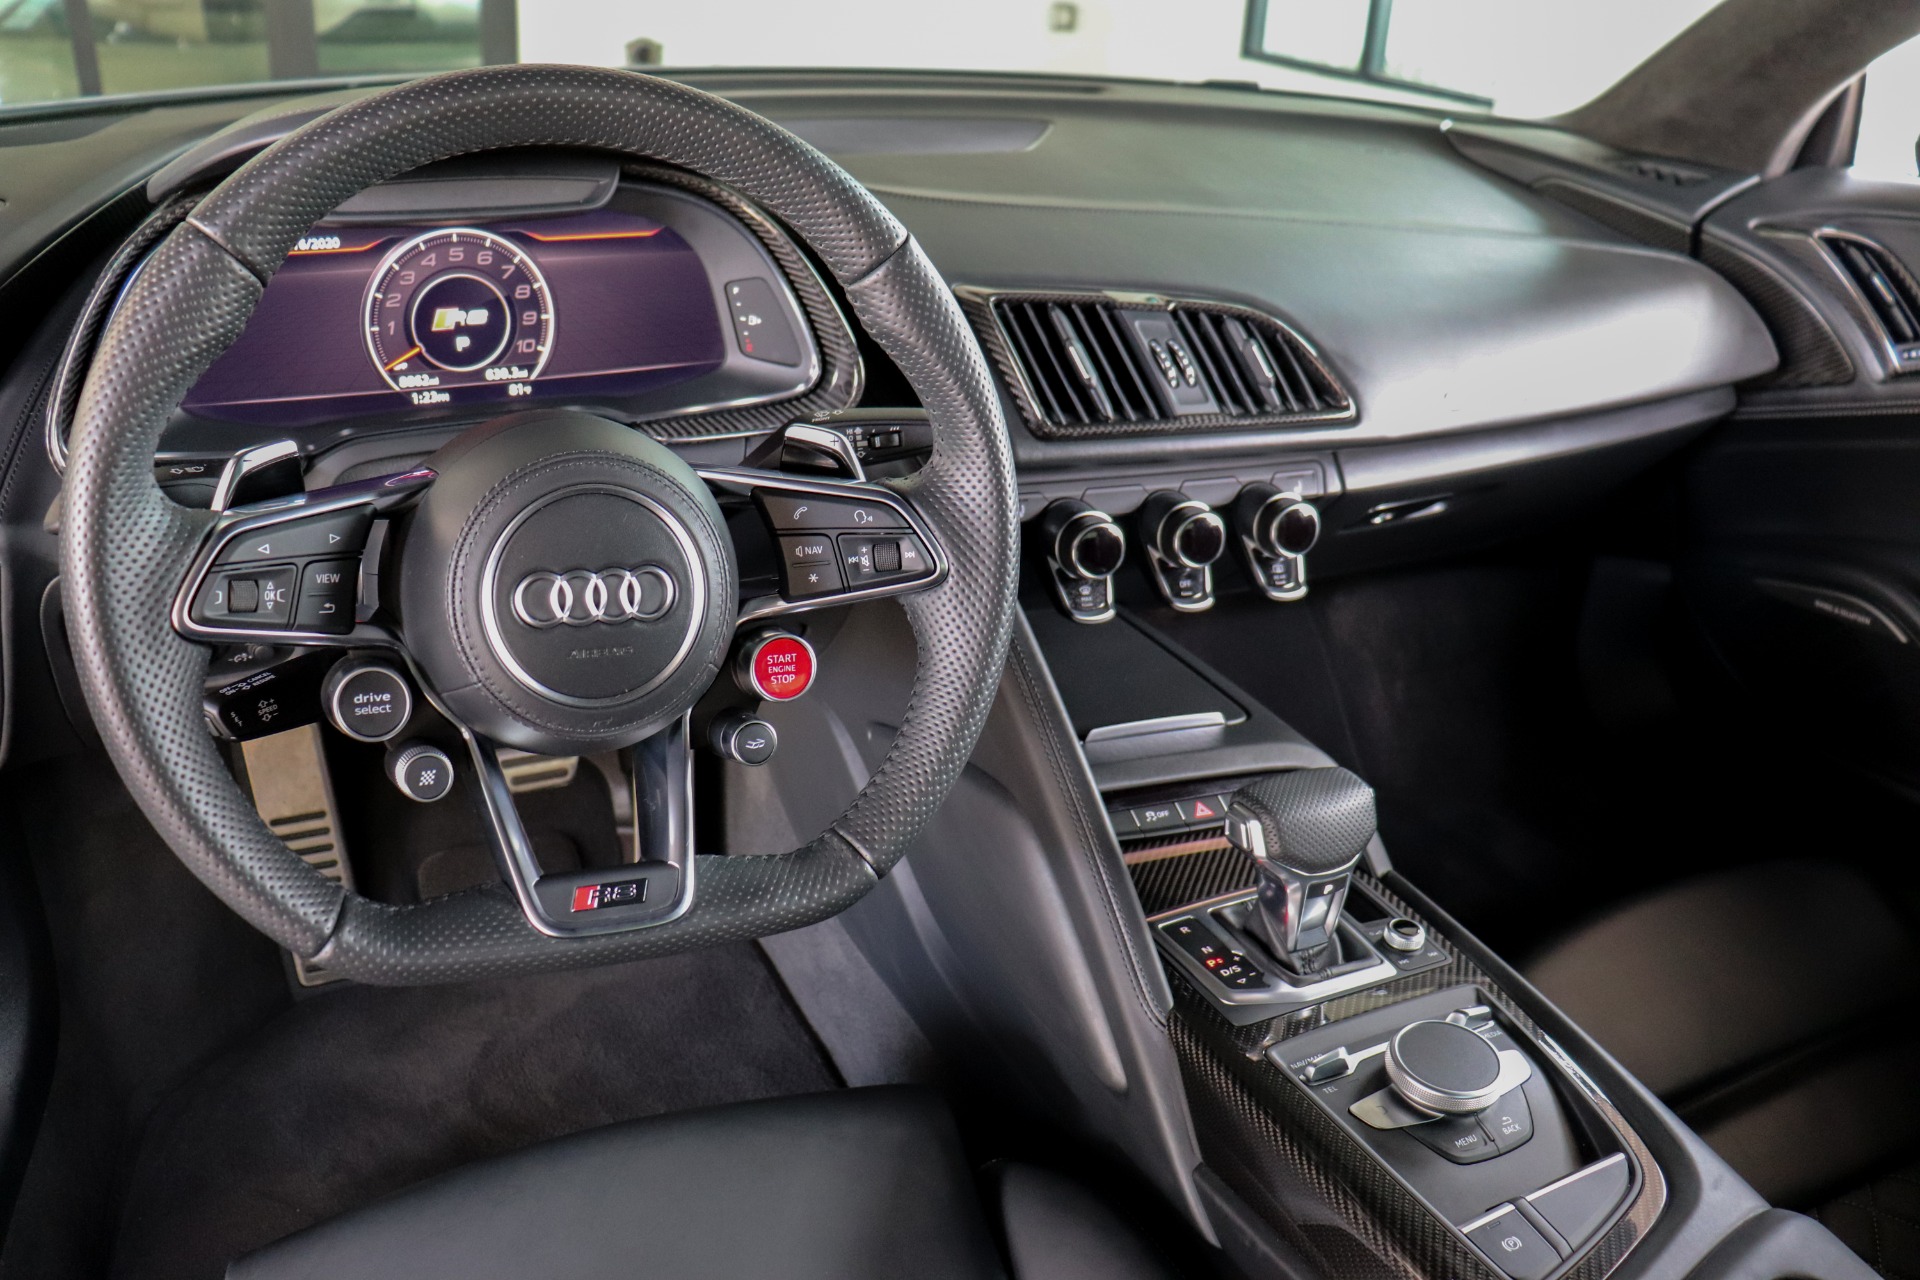 2018 Audi R8 5 2 Quattro V10 Plus